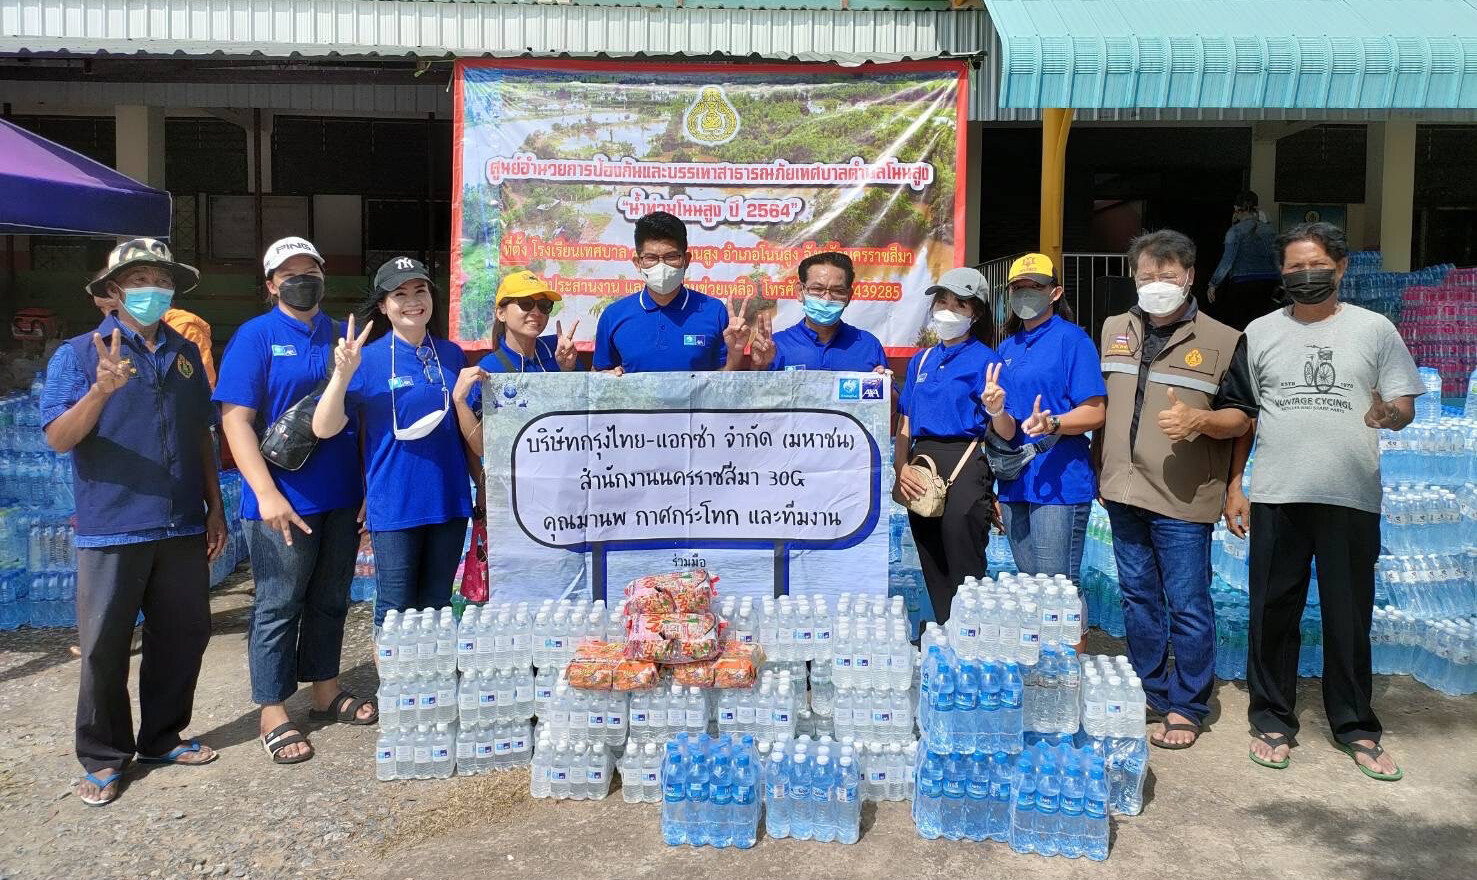 กรุงไทย-แอกซ่า ประกันชีวิต มอบน้ำดื่ม เพื่อช่วยเหลือผู้ประสบภัยน้ำท่วมเทศบาลตำบลโนนสูง จ.นครราชสีมา